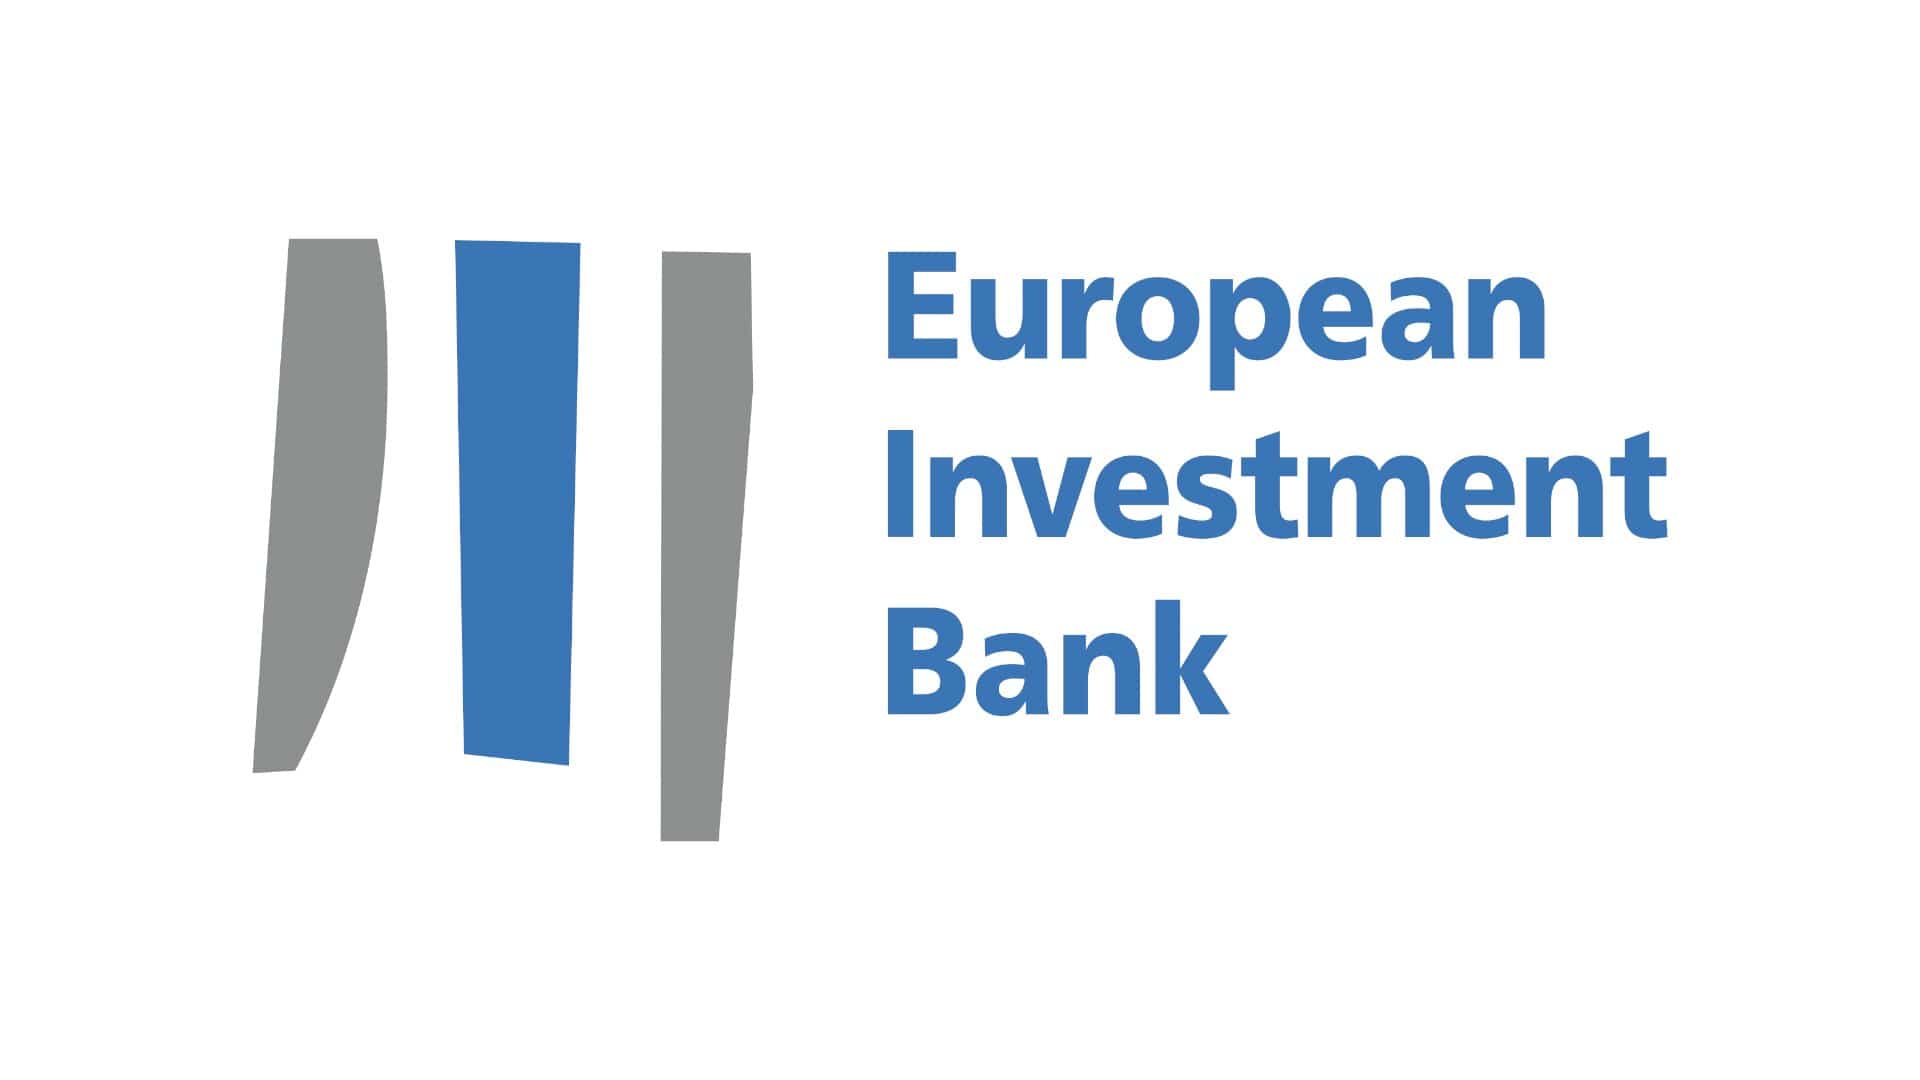 European investment Bank. Европейского инвестиционного банка. EIB. Европейский инвестиционный банк в Швеции. Европейский инвестиционный банк